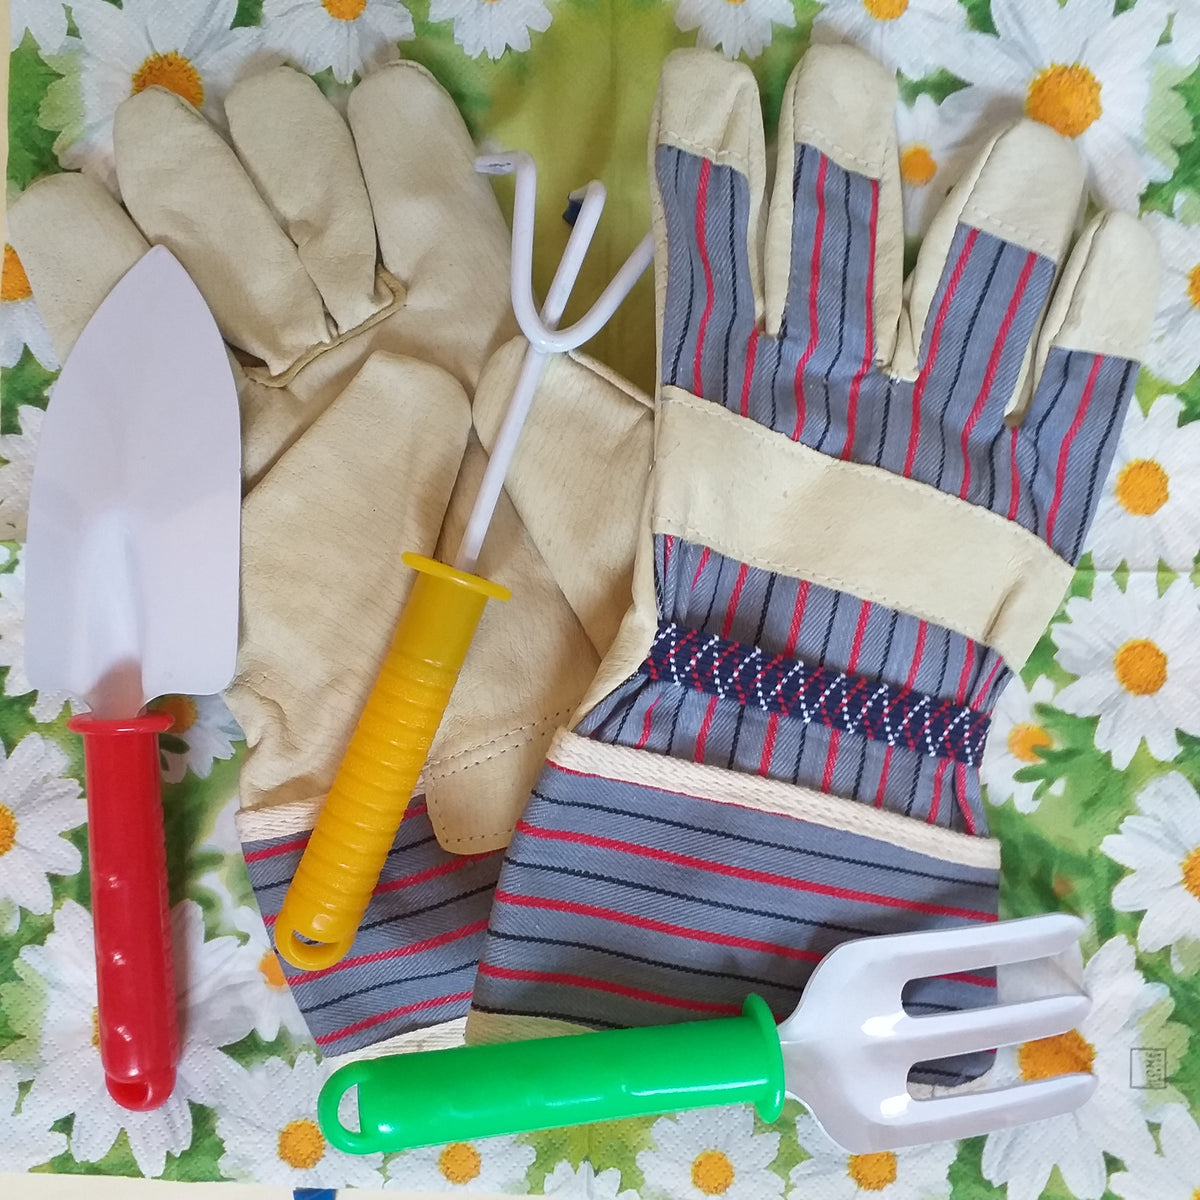 Guanti lavoro e giardinaggio pelle tela  attrezzi utensili giardino –  hobbyshopbomboniere